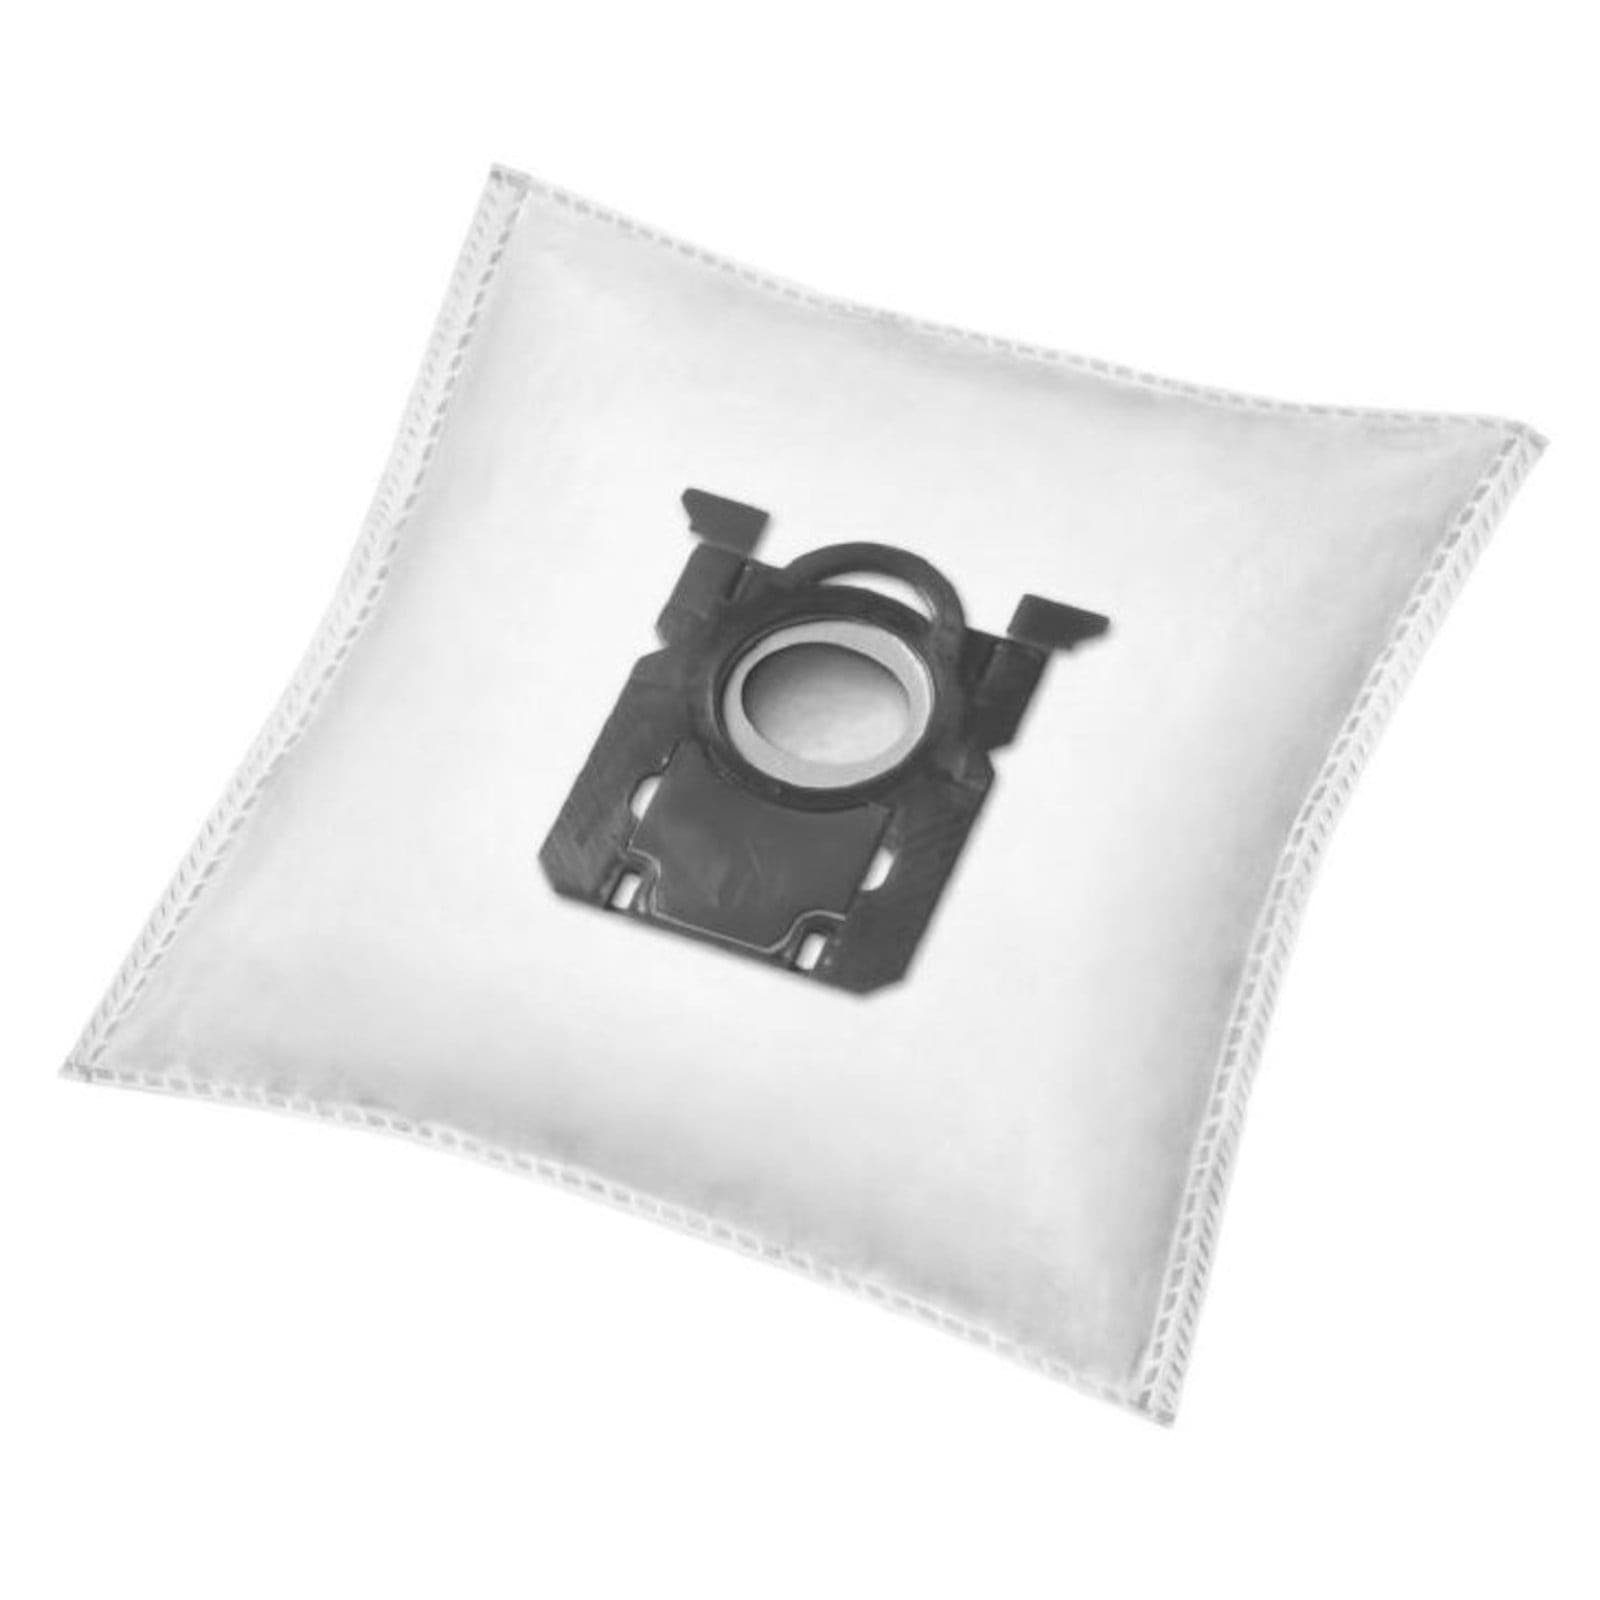 41IW, Staubsaugerbeutel Electrolux für Reinica Saugerbeutel Beutel passend Staubbeutel EEG 10er-Pack